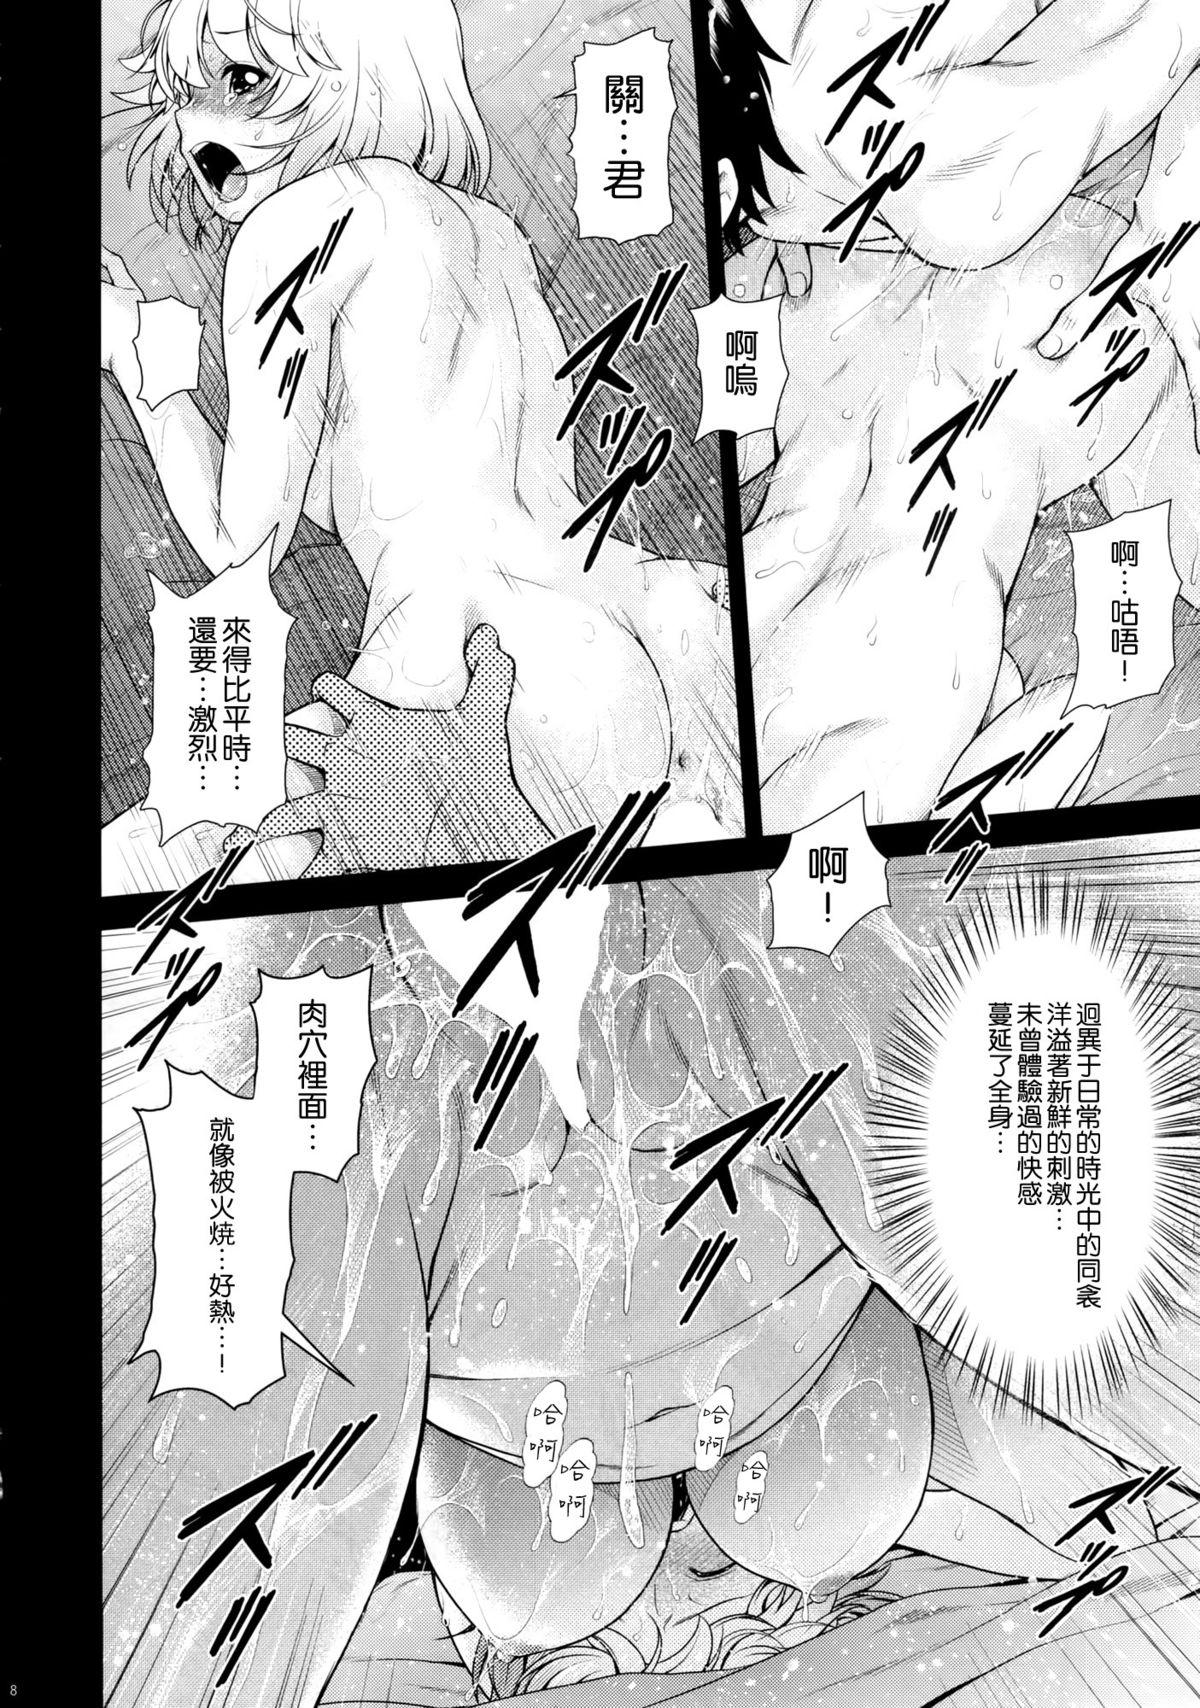 Groping Tonari no Y-san 4jikanme - Tonari no seki-kun Romantic - Page 8